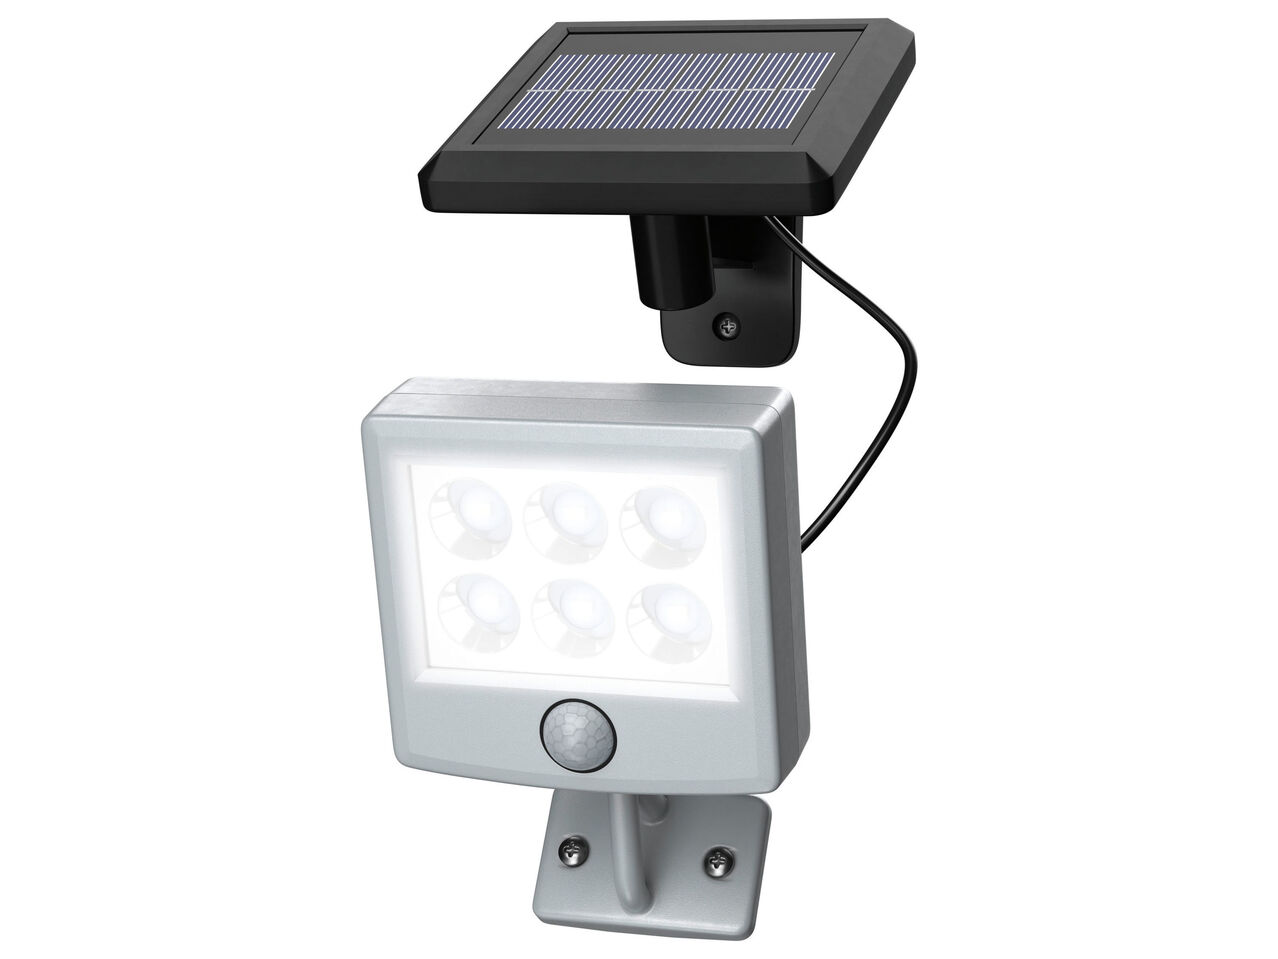 LIVARNO HOME® Reflektor solarny LED z czujnikiem , cena 39,99 PLN 

- w zestawie: ...